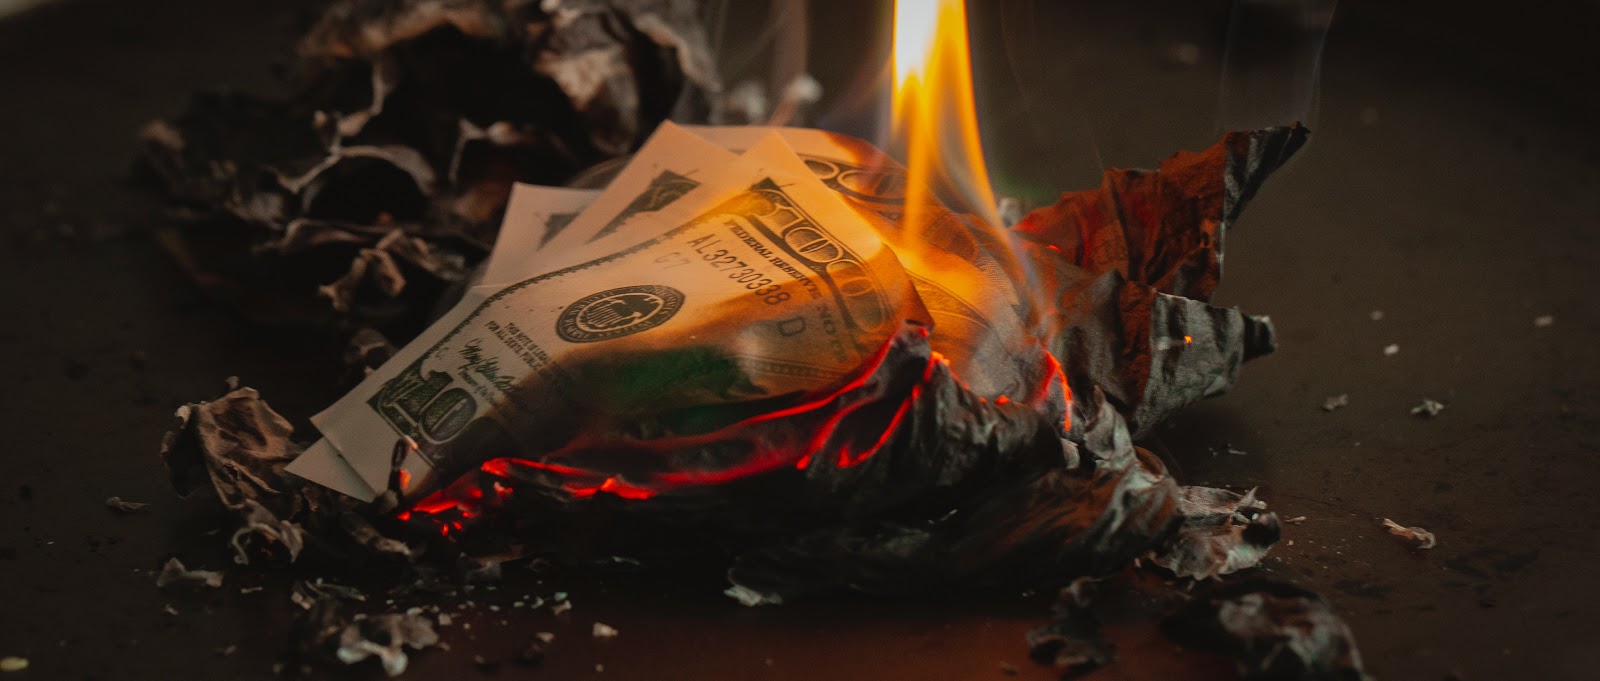 100 US dollar bills burning into ashes